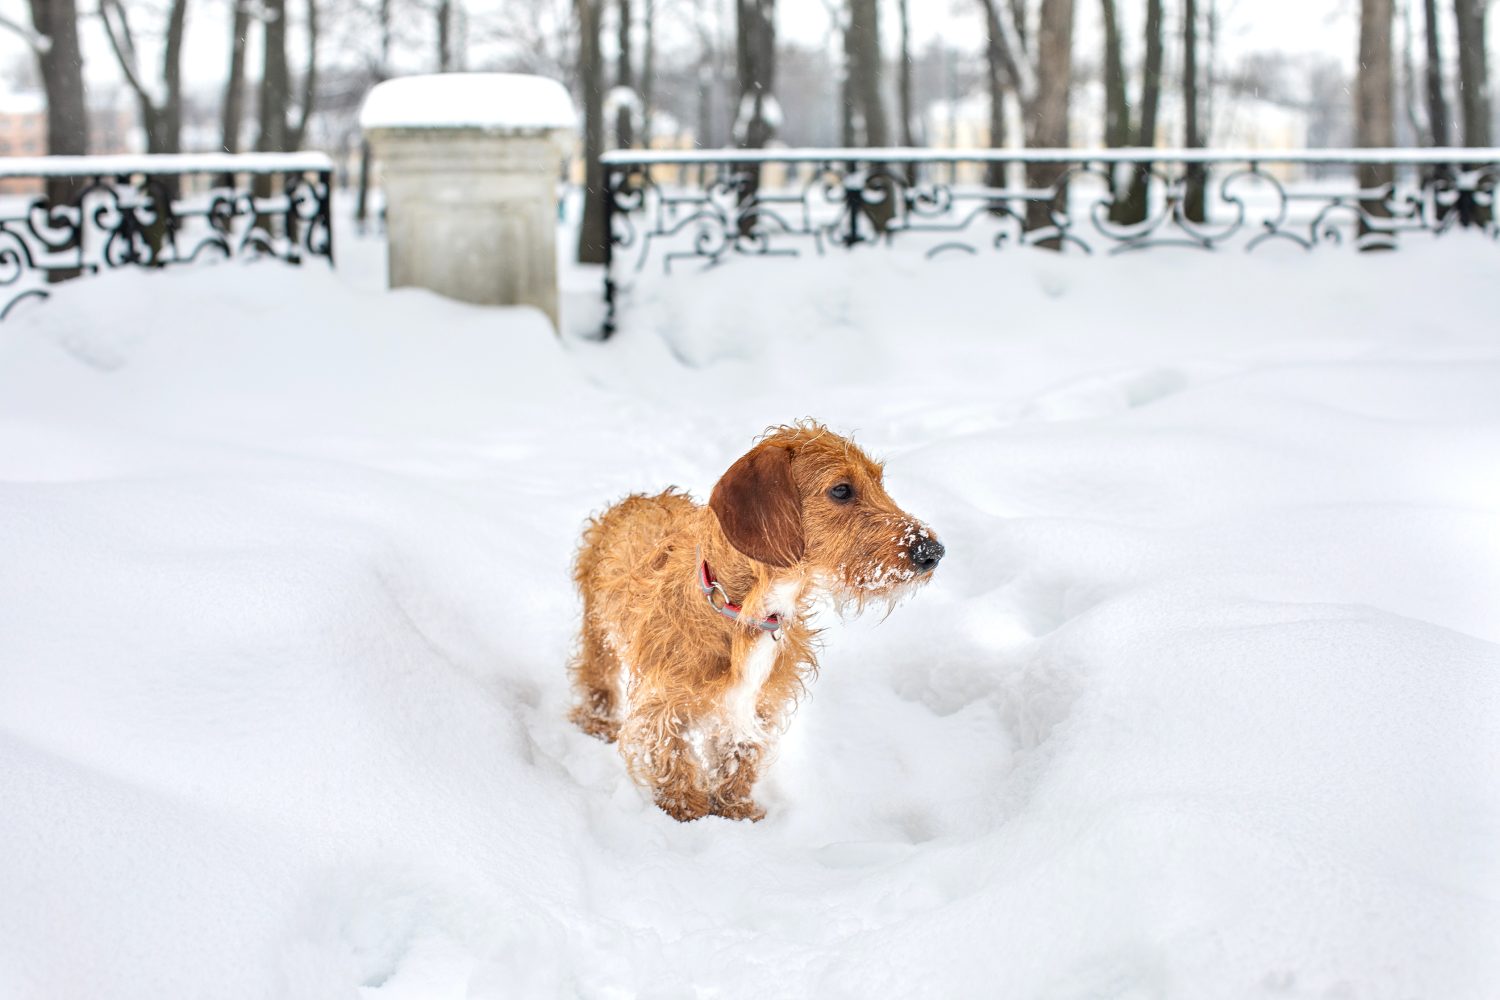 Piccolo Bassotto A Pelo Duro Marrone Su Una Passeggiata Invernale.  Un cane si trova in un parco innevato